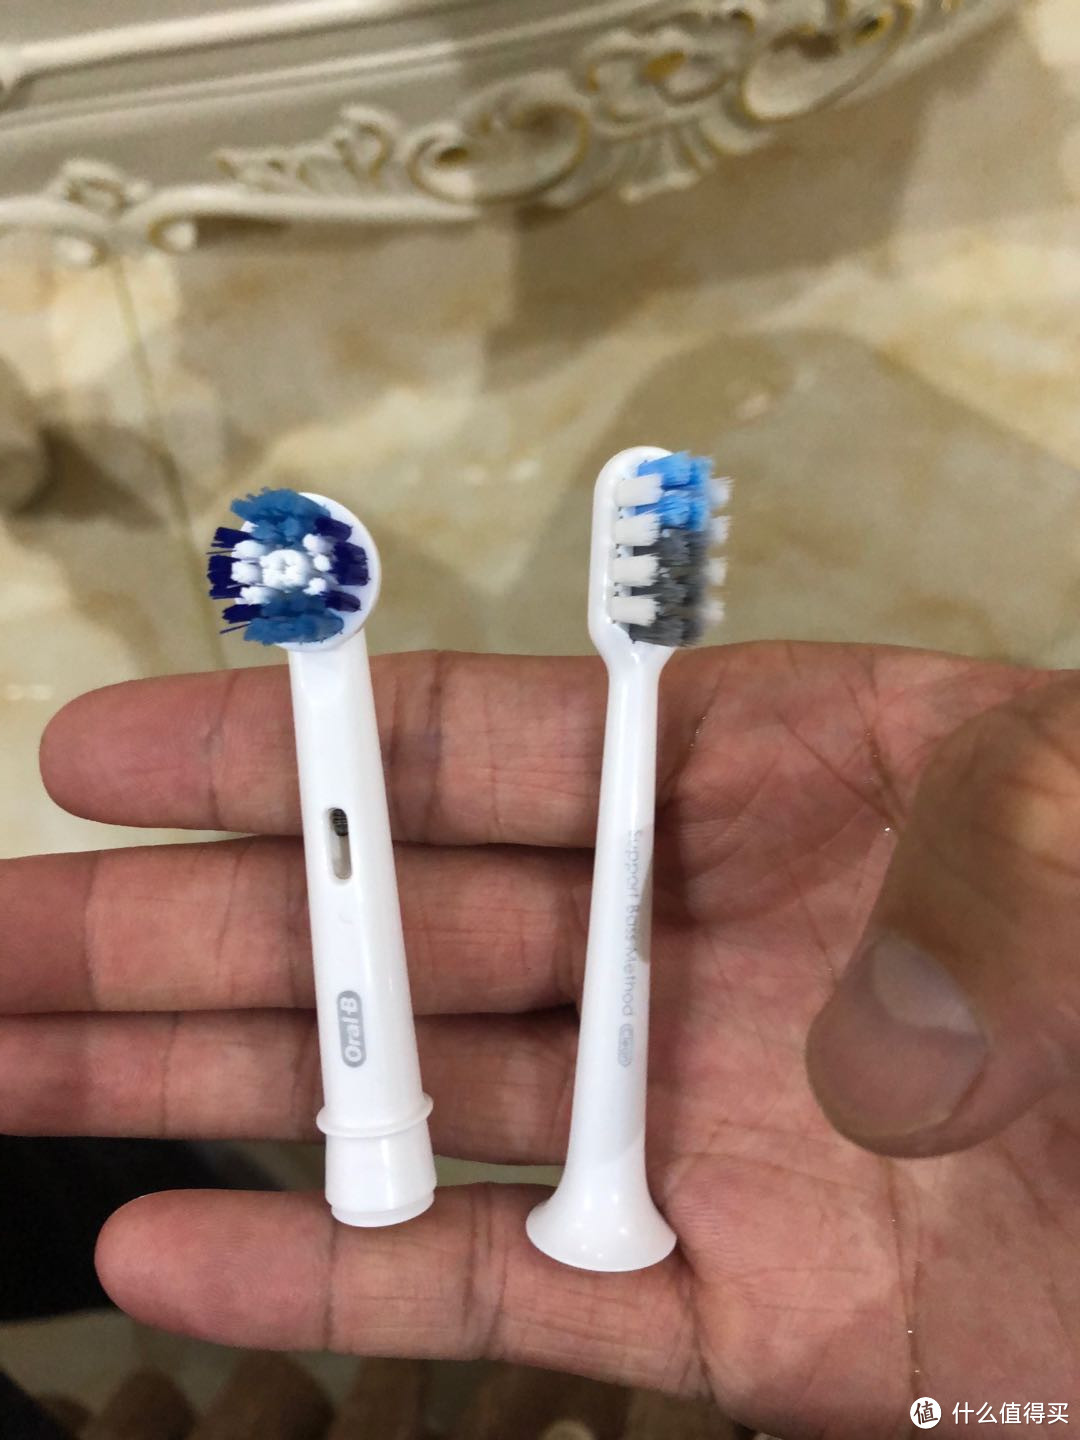 这是博朗的牙刷头和贝***牙刷头的对比